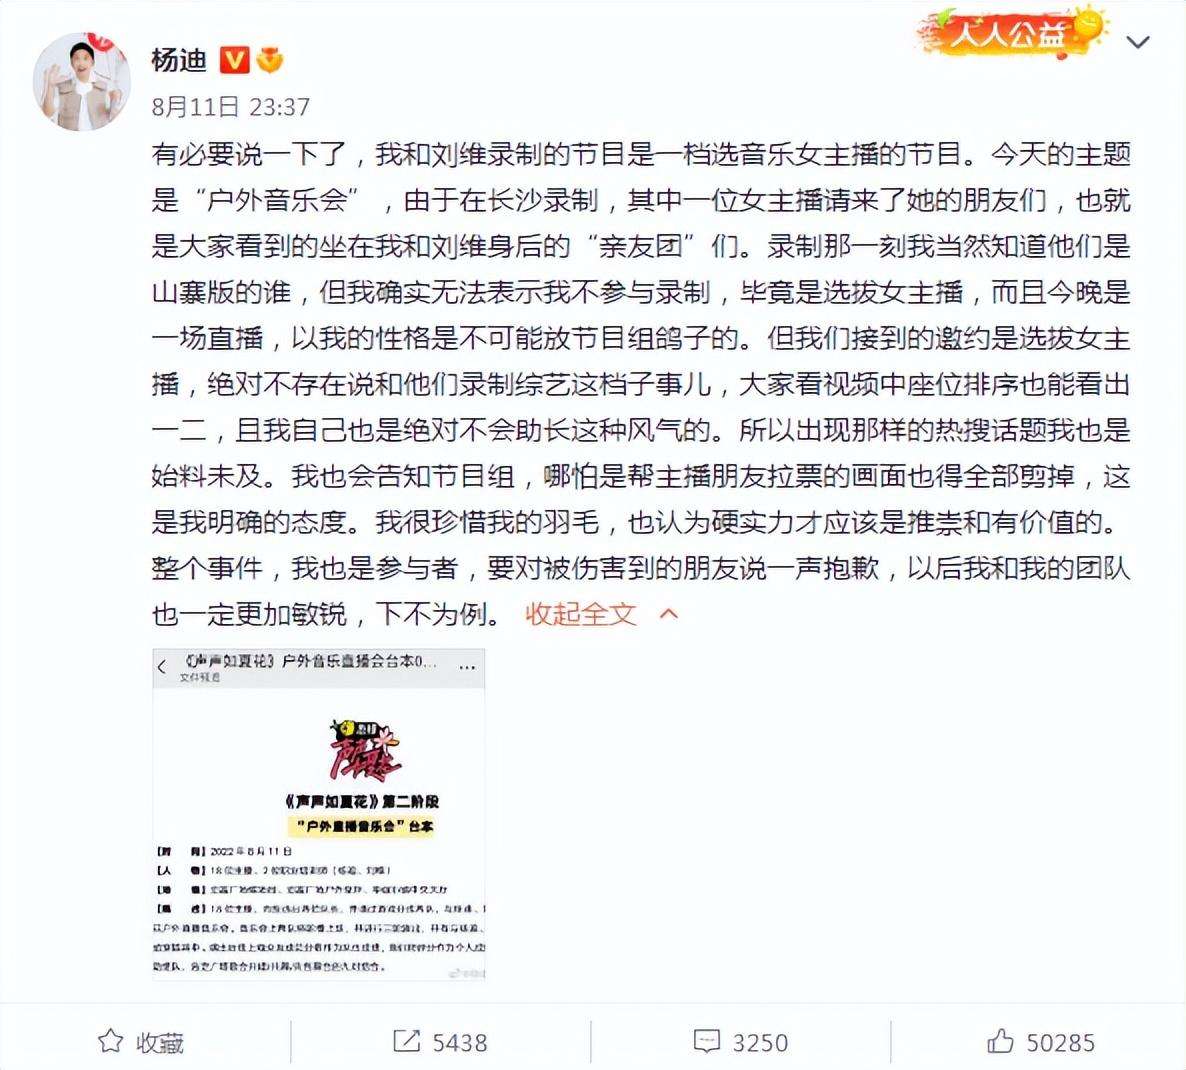 山寨男团ESO综艺首秀引争议，杨迪刘维致歉，鹿哈透露真实想法